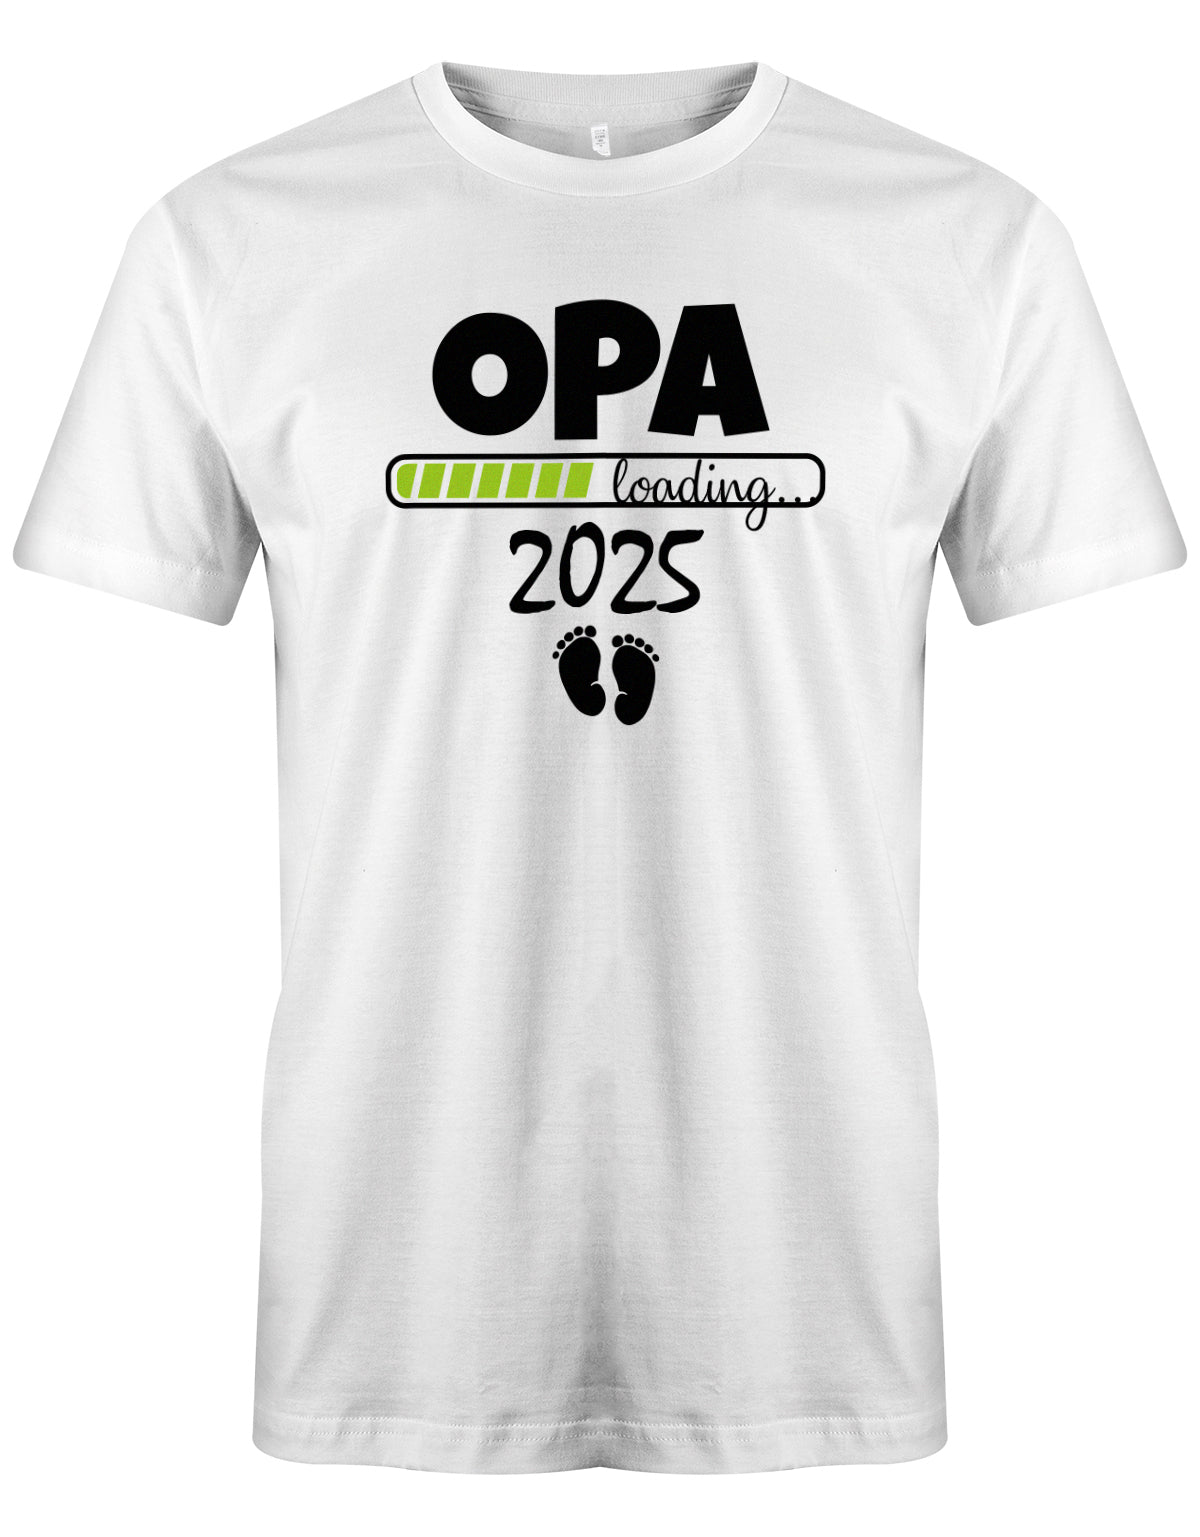 Opa T-Shirt Spruch für werdenden Opa - Opa Loading 2025 Balken lädt. Fußabdrücke Baby. Weiss